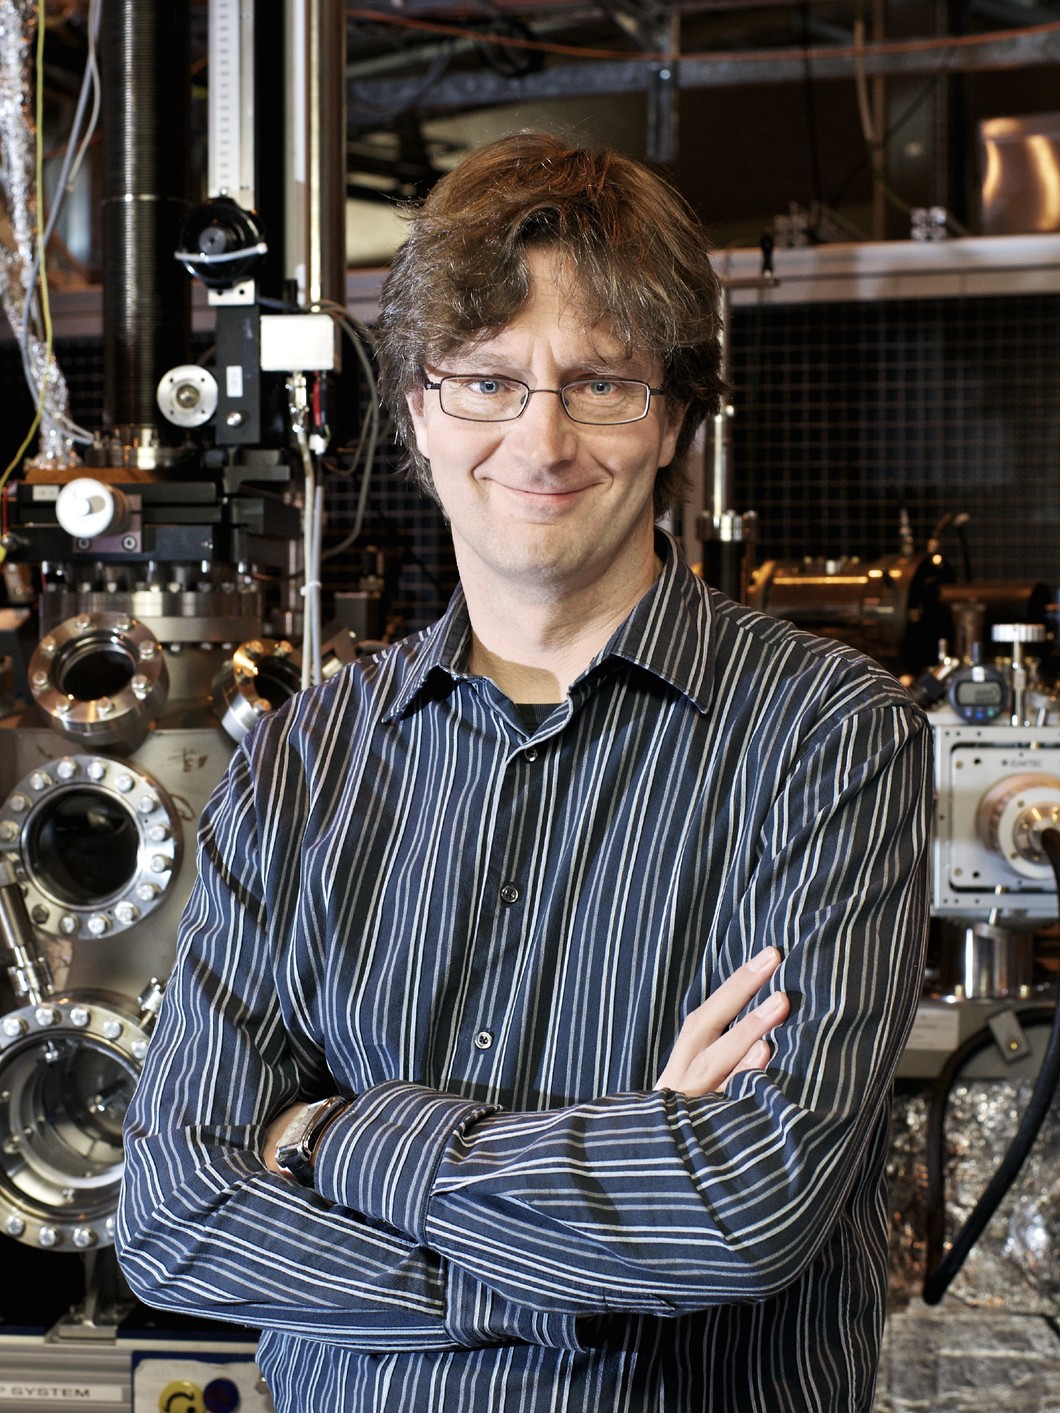 Frithjof Nolting dirige le Laboratoire de la matière condensée au PSI. Sa spécialité est le nanomagnétisme. (Photo: Institut Paul Scherrer/Markus Fischer)